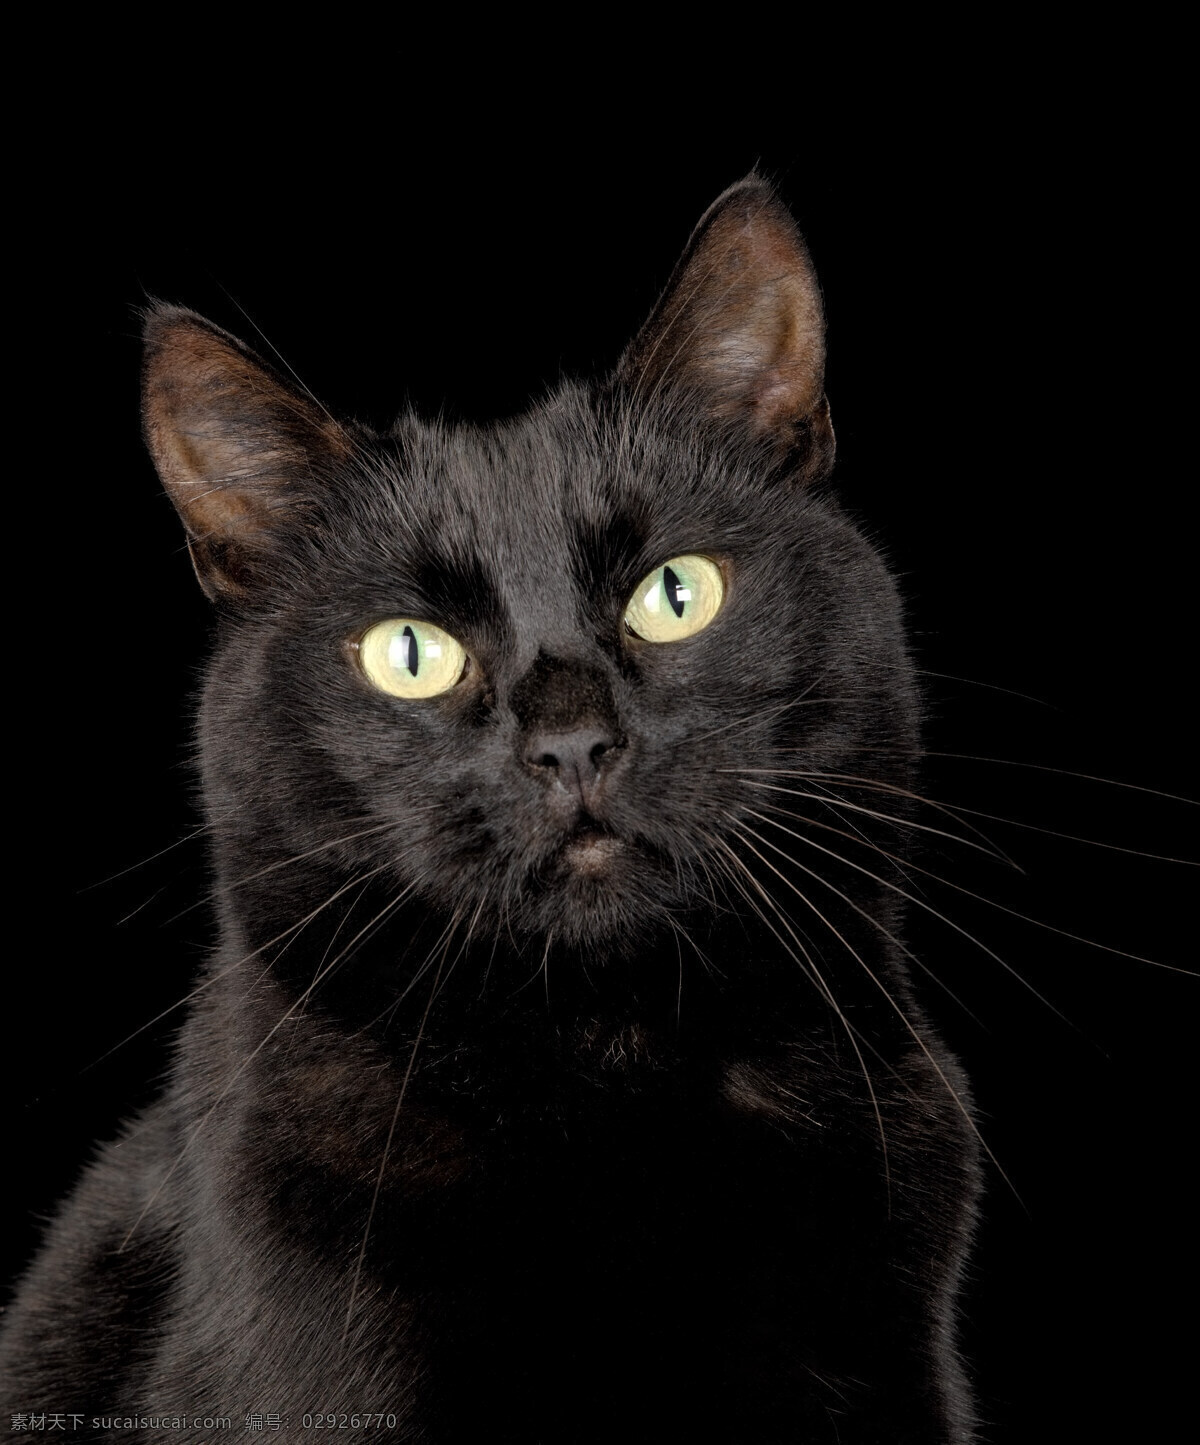 可爱 小 黑猫 小猫 猫咪 萌 宠物猫 动物世界 猫咪图片 生物世界